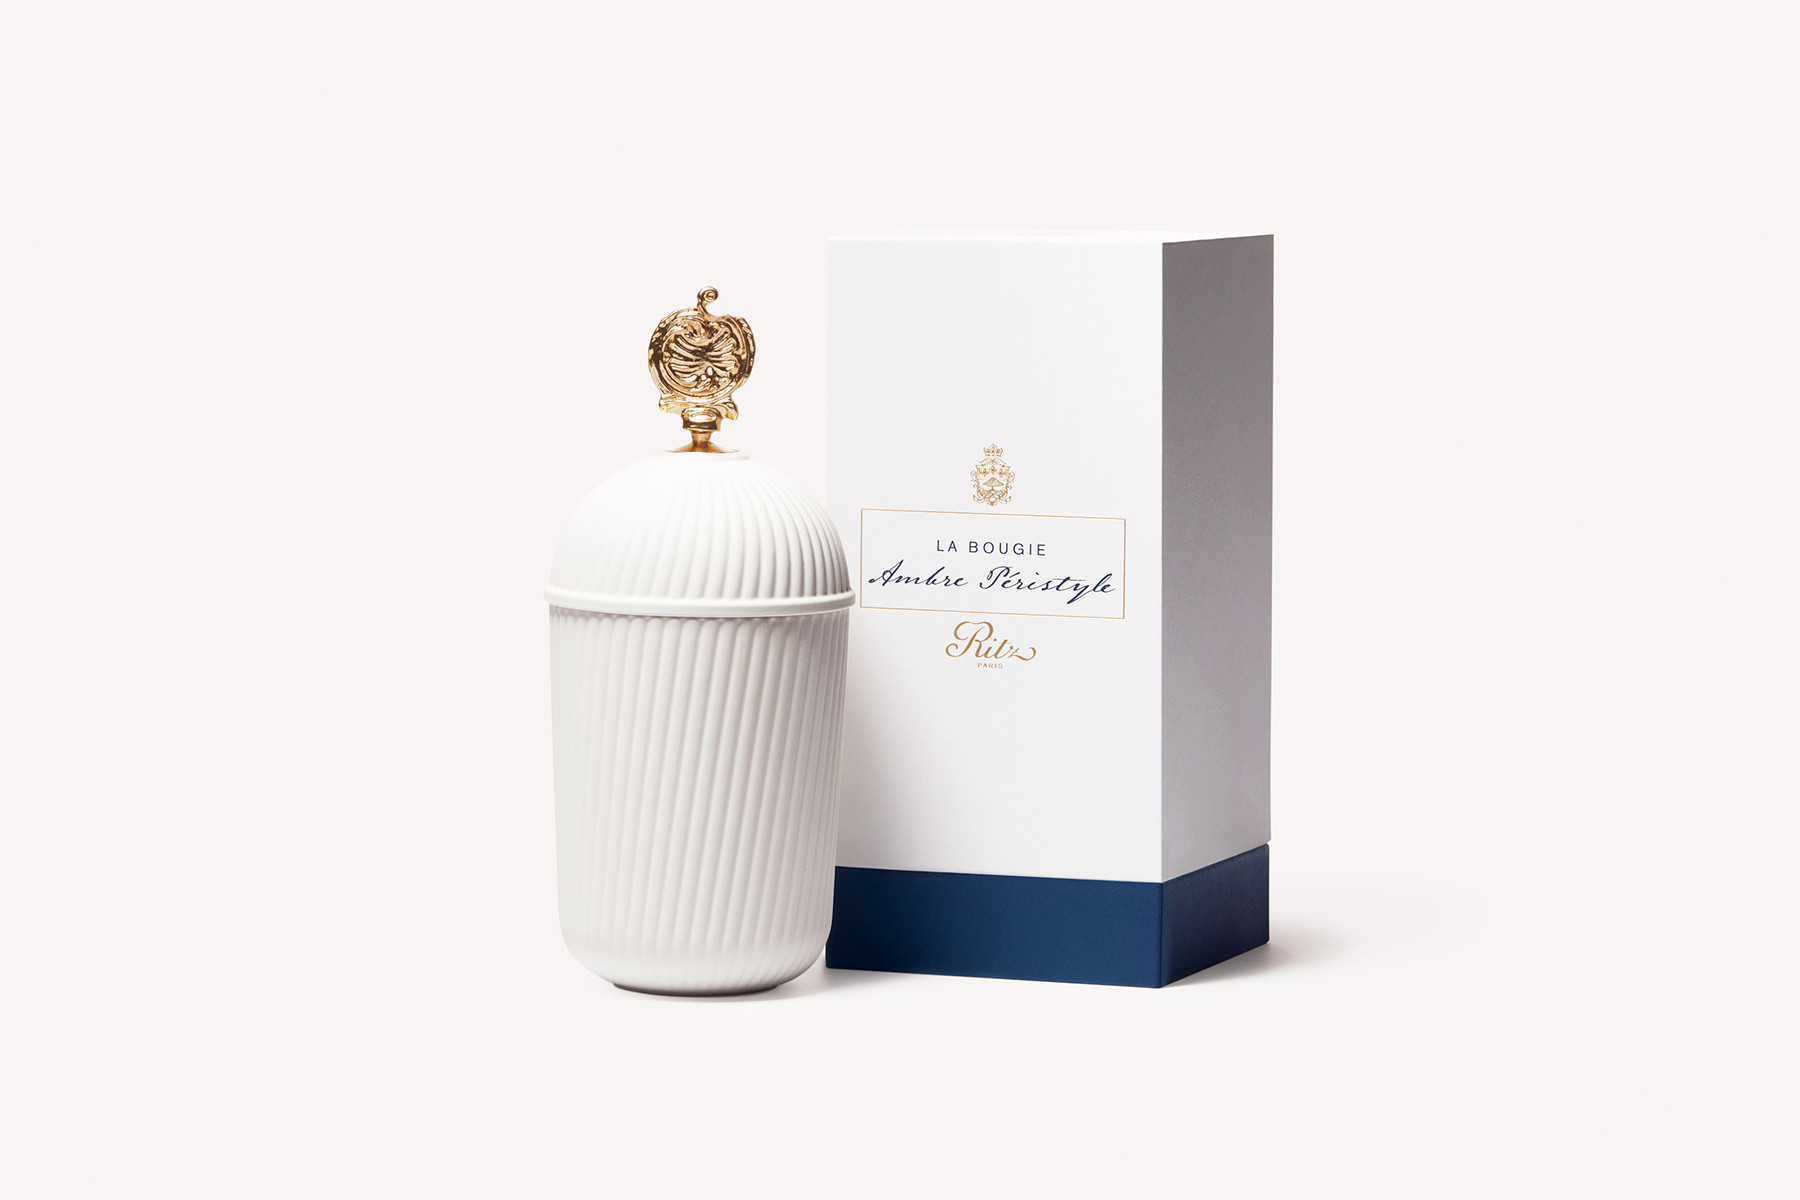 Bougie Ritz Paris en porcelaine - Parfums Ambre Péristyle - L'Art de ...